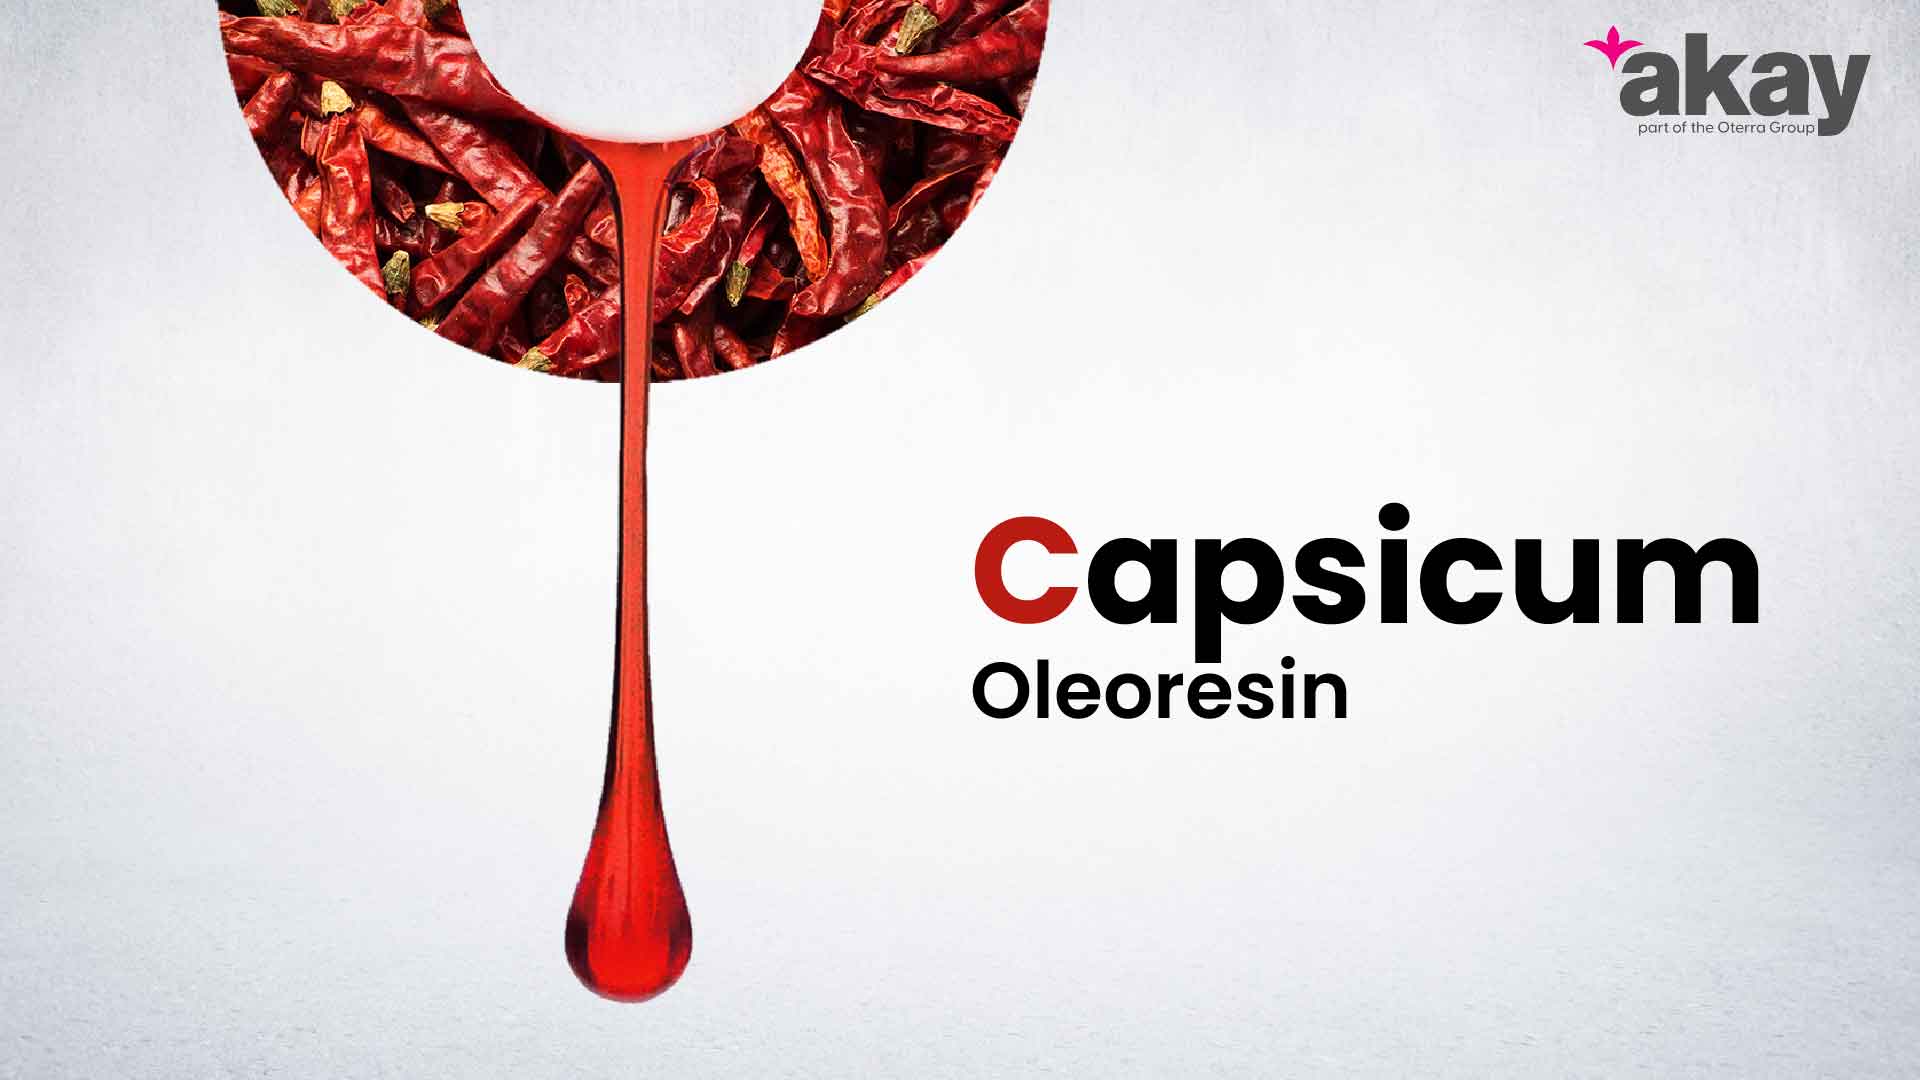 Capsicum oleoresin